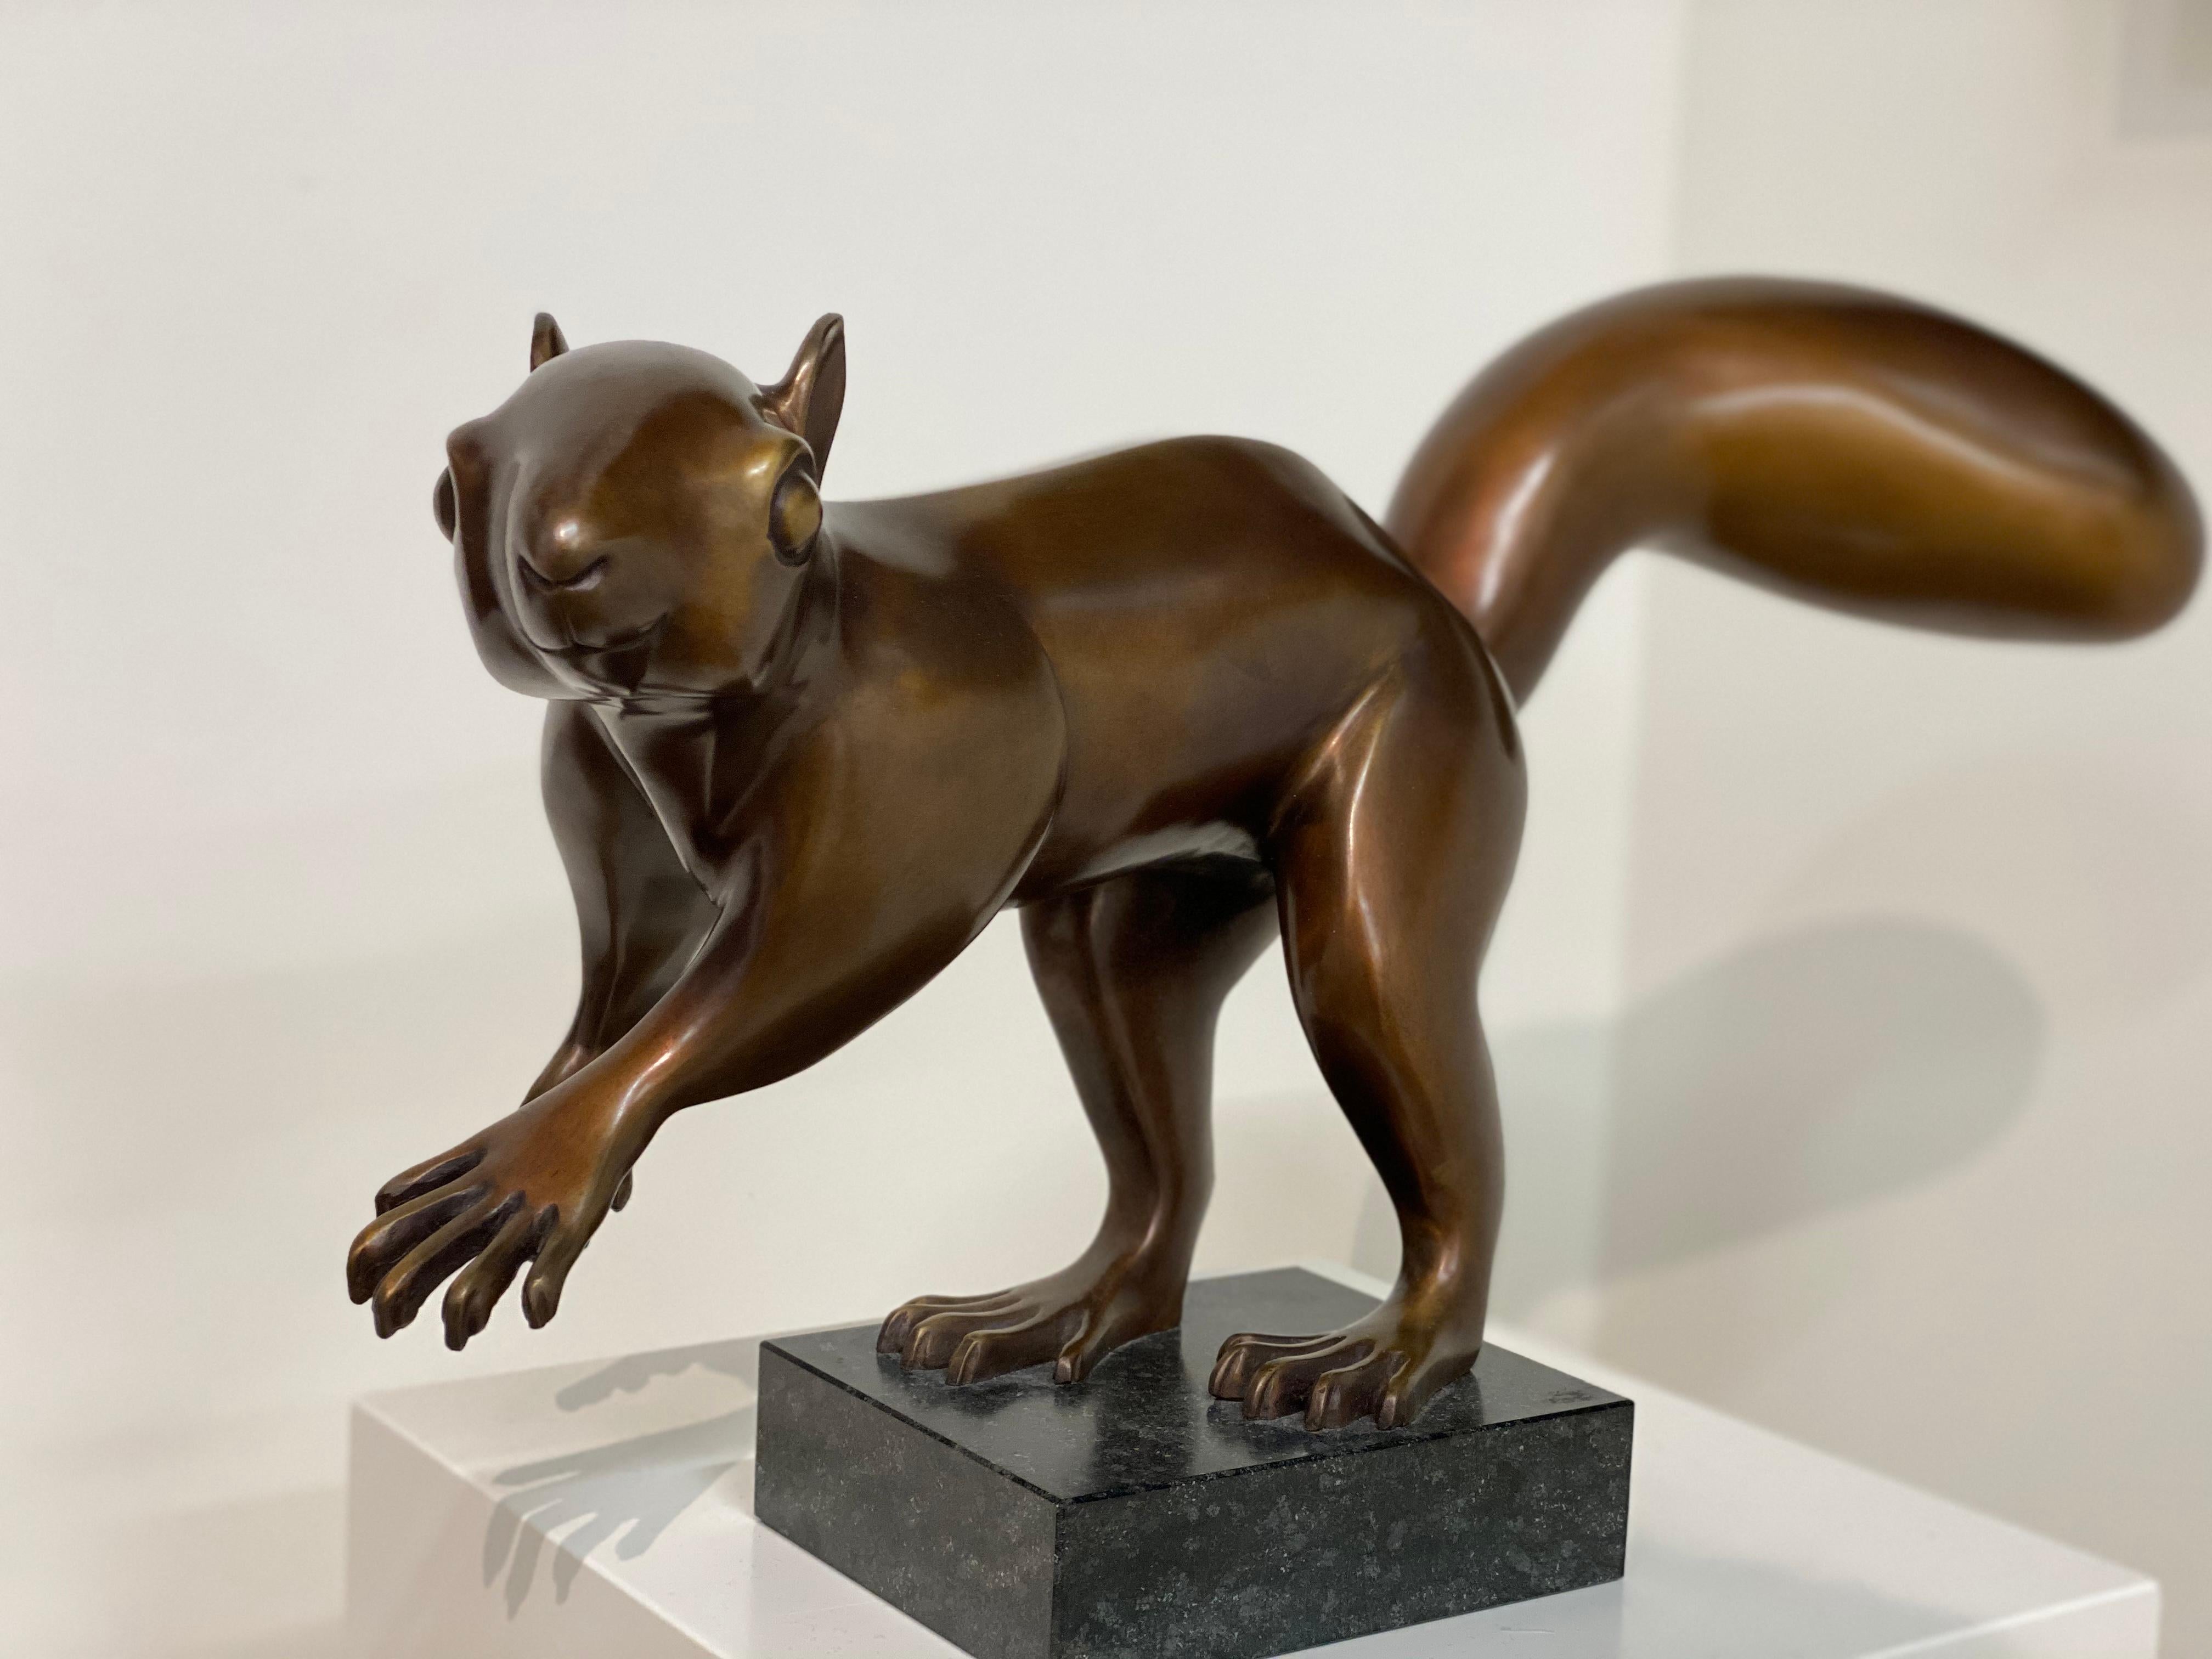 Catch me if you can!- Niederländische Bronzeskulptur eines Eichhörnchens aus dem 21. Jahrhundert – Sculpture von Frans van Straaten